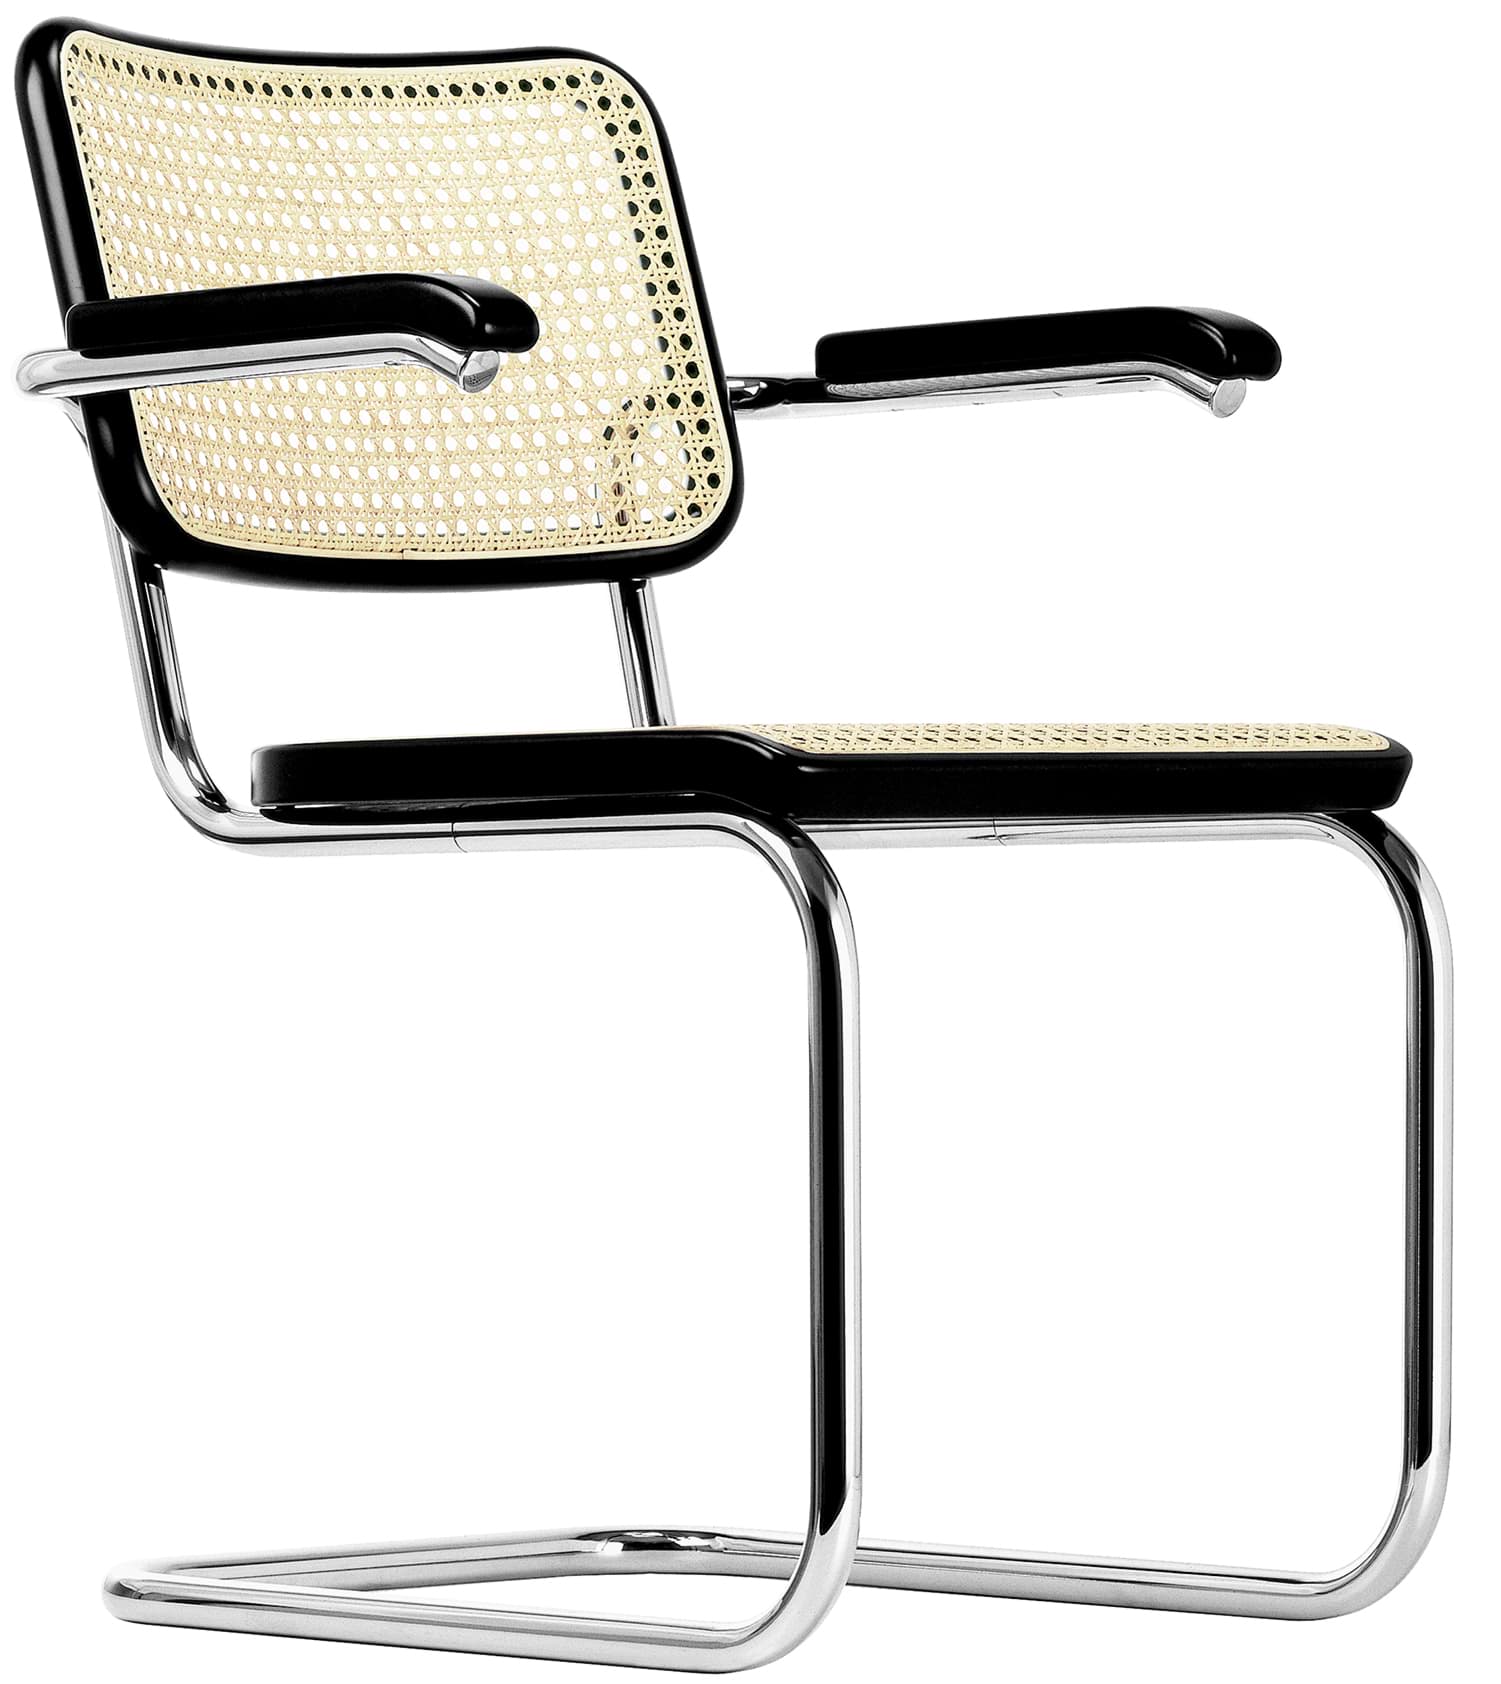 S 32 V कैंटिलीवर कुर्सी - Marcel Breuer की तस्वीर